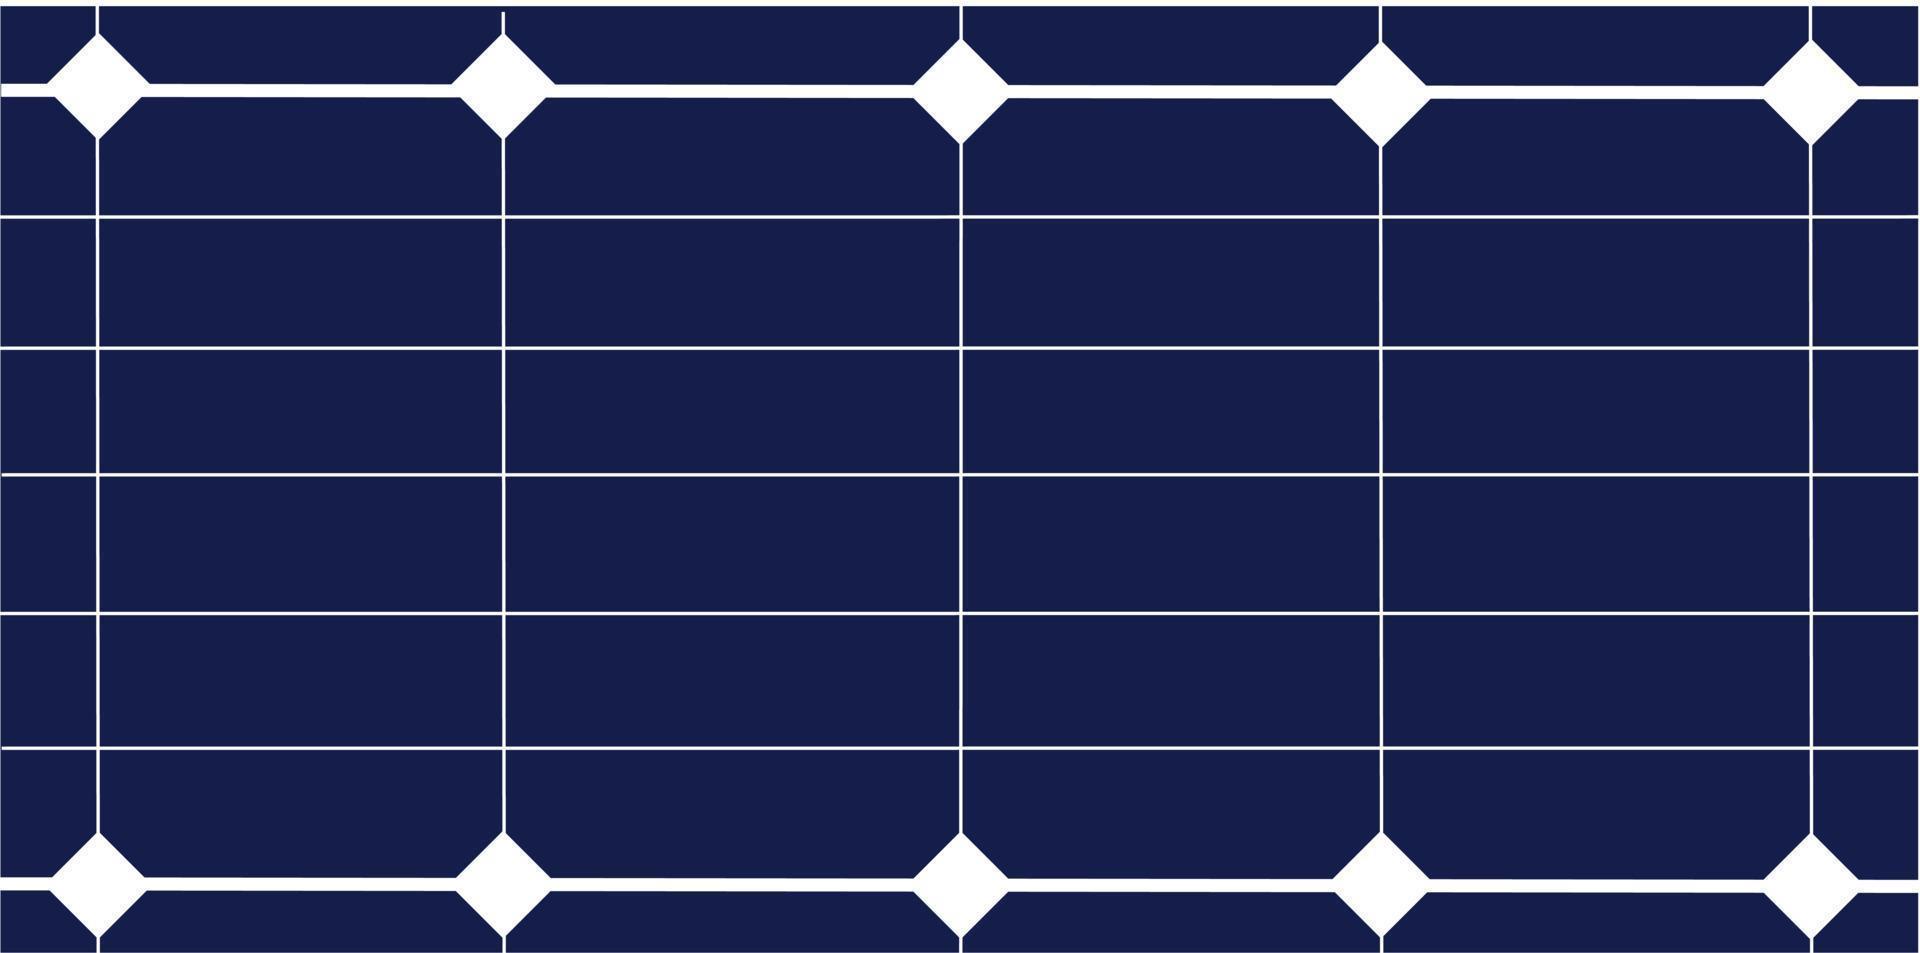 energi kraft ekologi panel solceller solcell sälj elektrisk generation abstrakt mönster rutnät retro linje resurs station system teknologi innovativ global förnybar takhus solljus miljö vektor